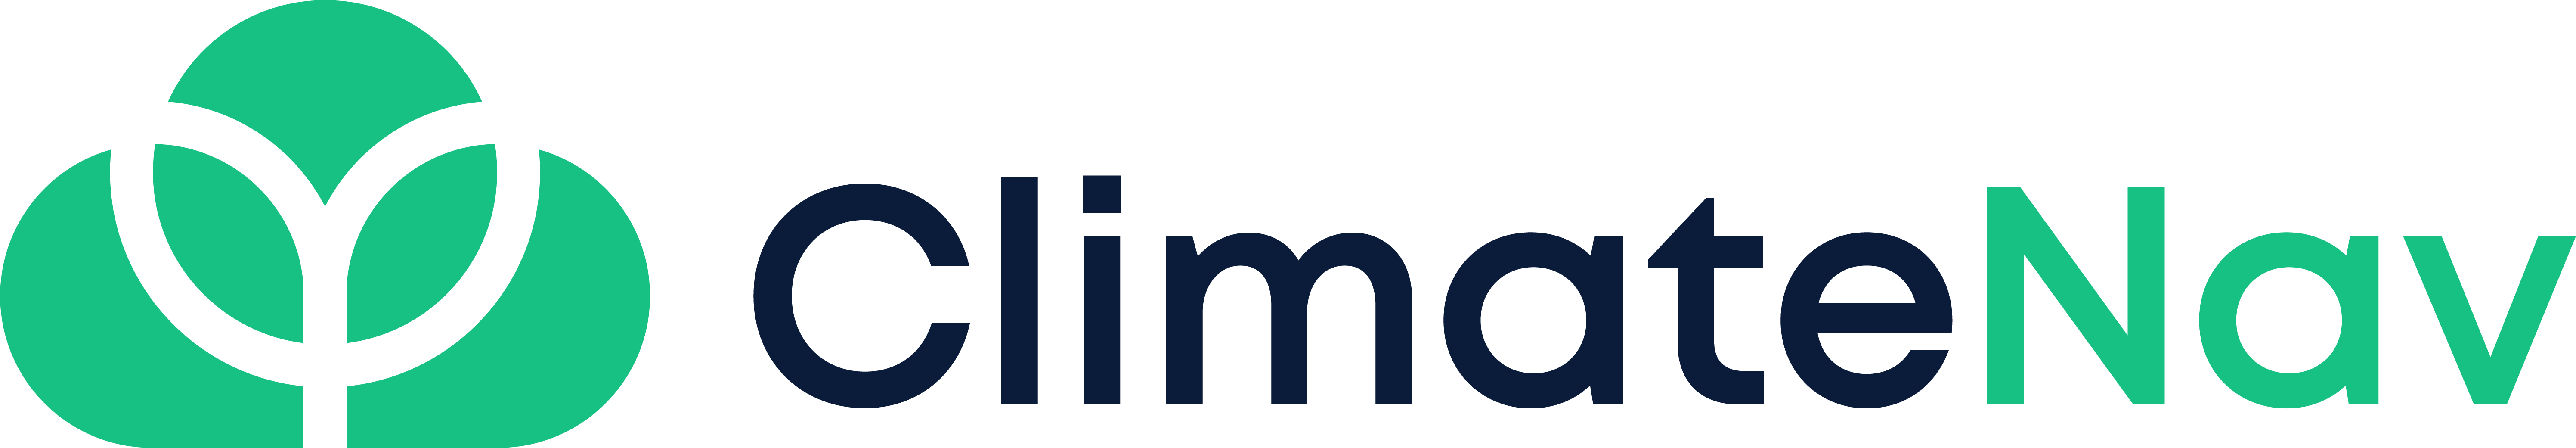 ClimateNav logo